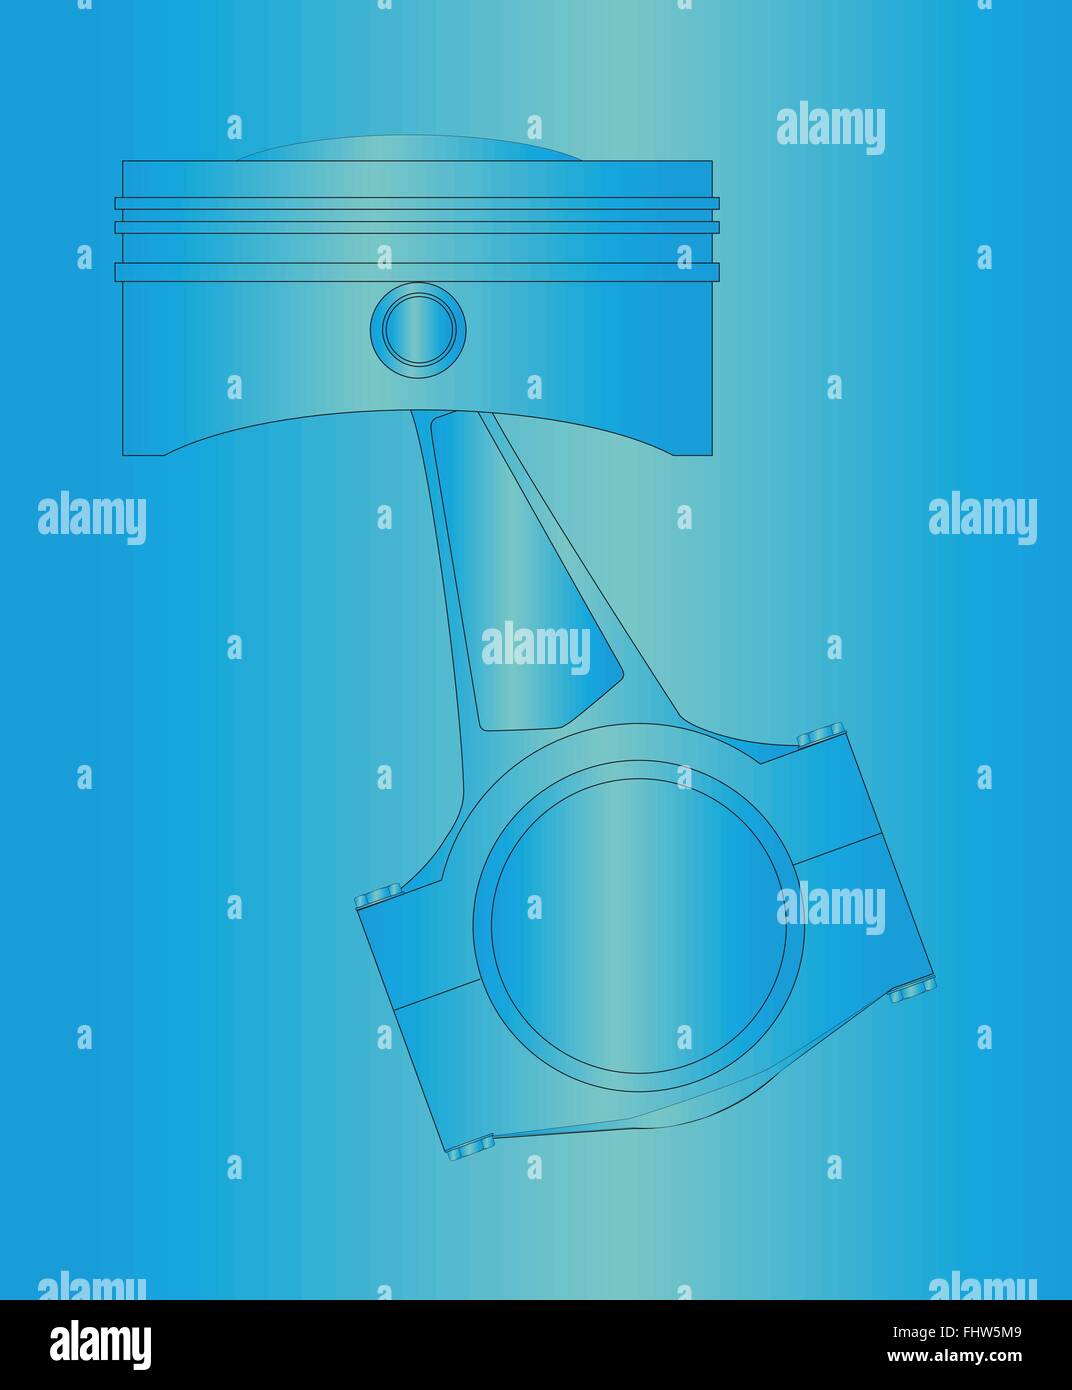 Un pistone di un motore a benzina o diesel con la biella in posizione. oltre un blueprint sfondo stile Illustrazione Vettoriale